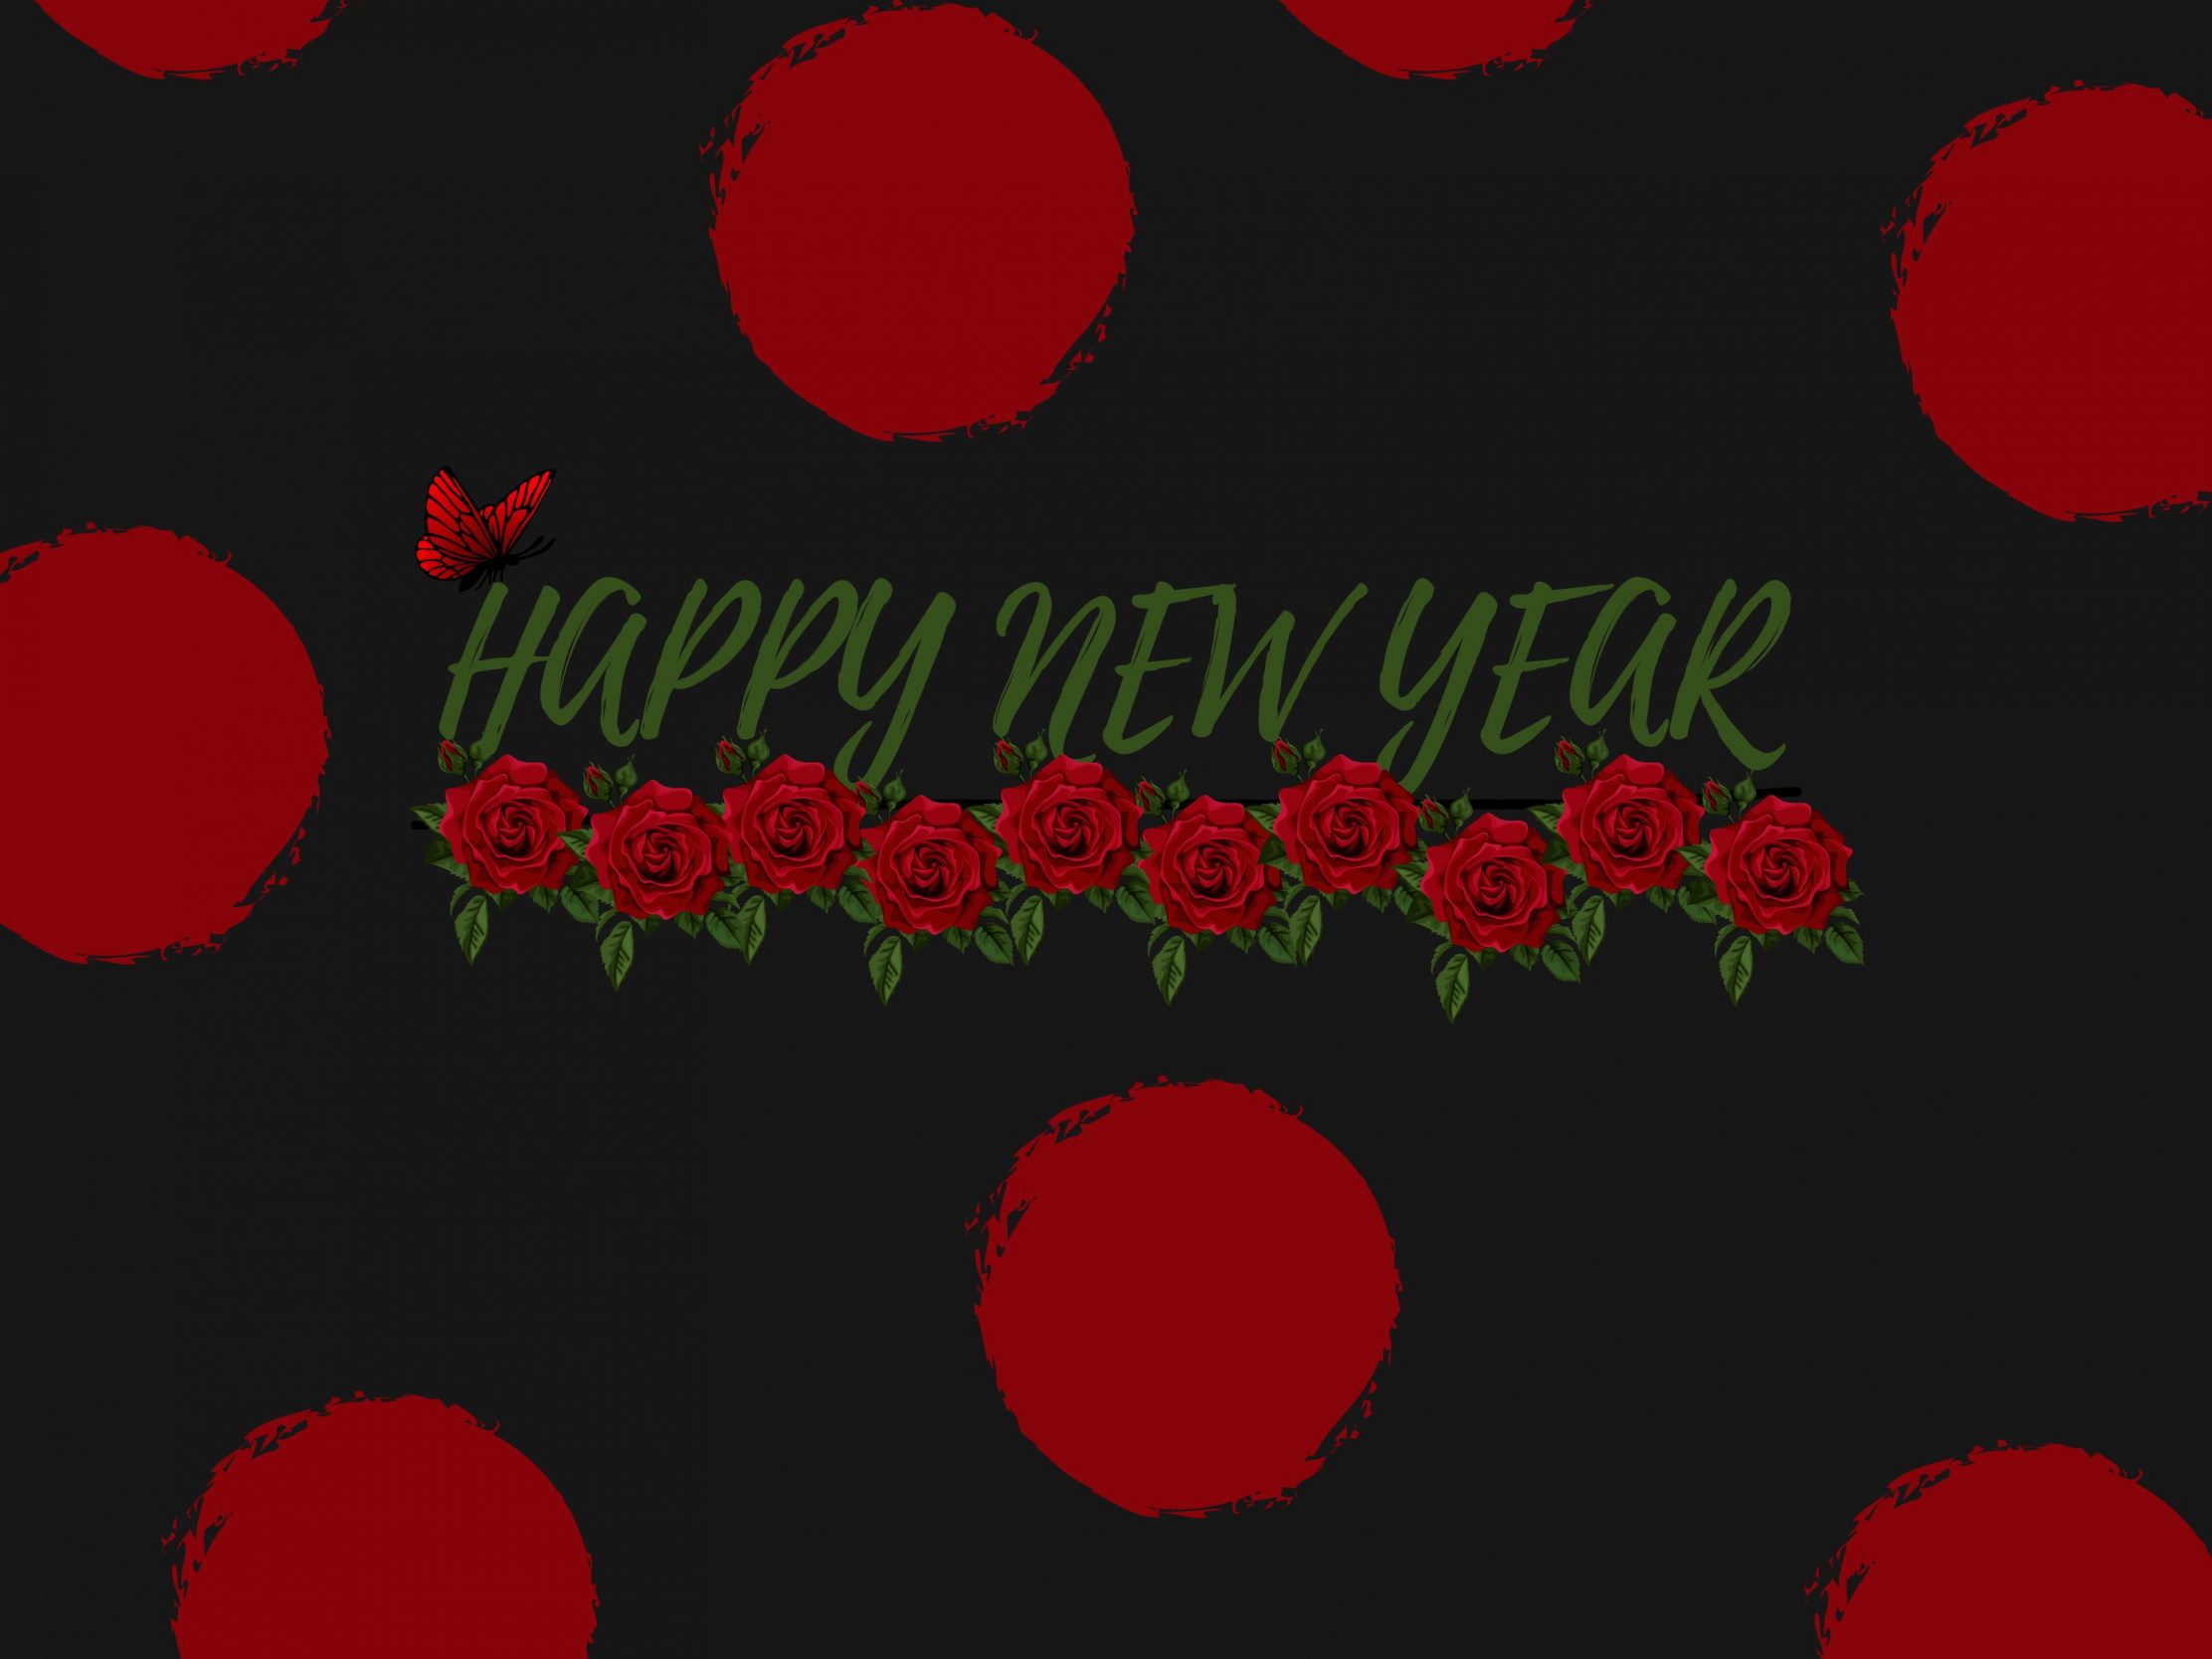 2224x1668 iPad Pro wallpapers Red Poka Dot New Year Ipad Wallpaper 2224x1668 pixels resolution